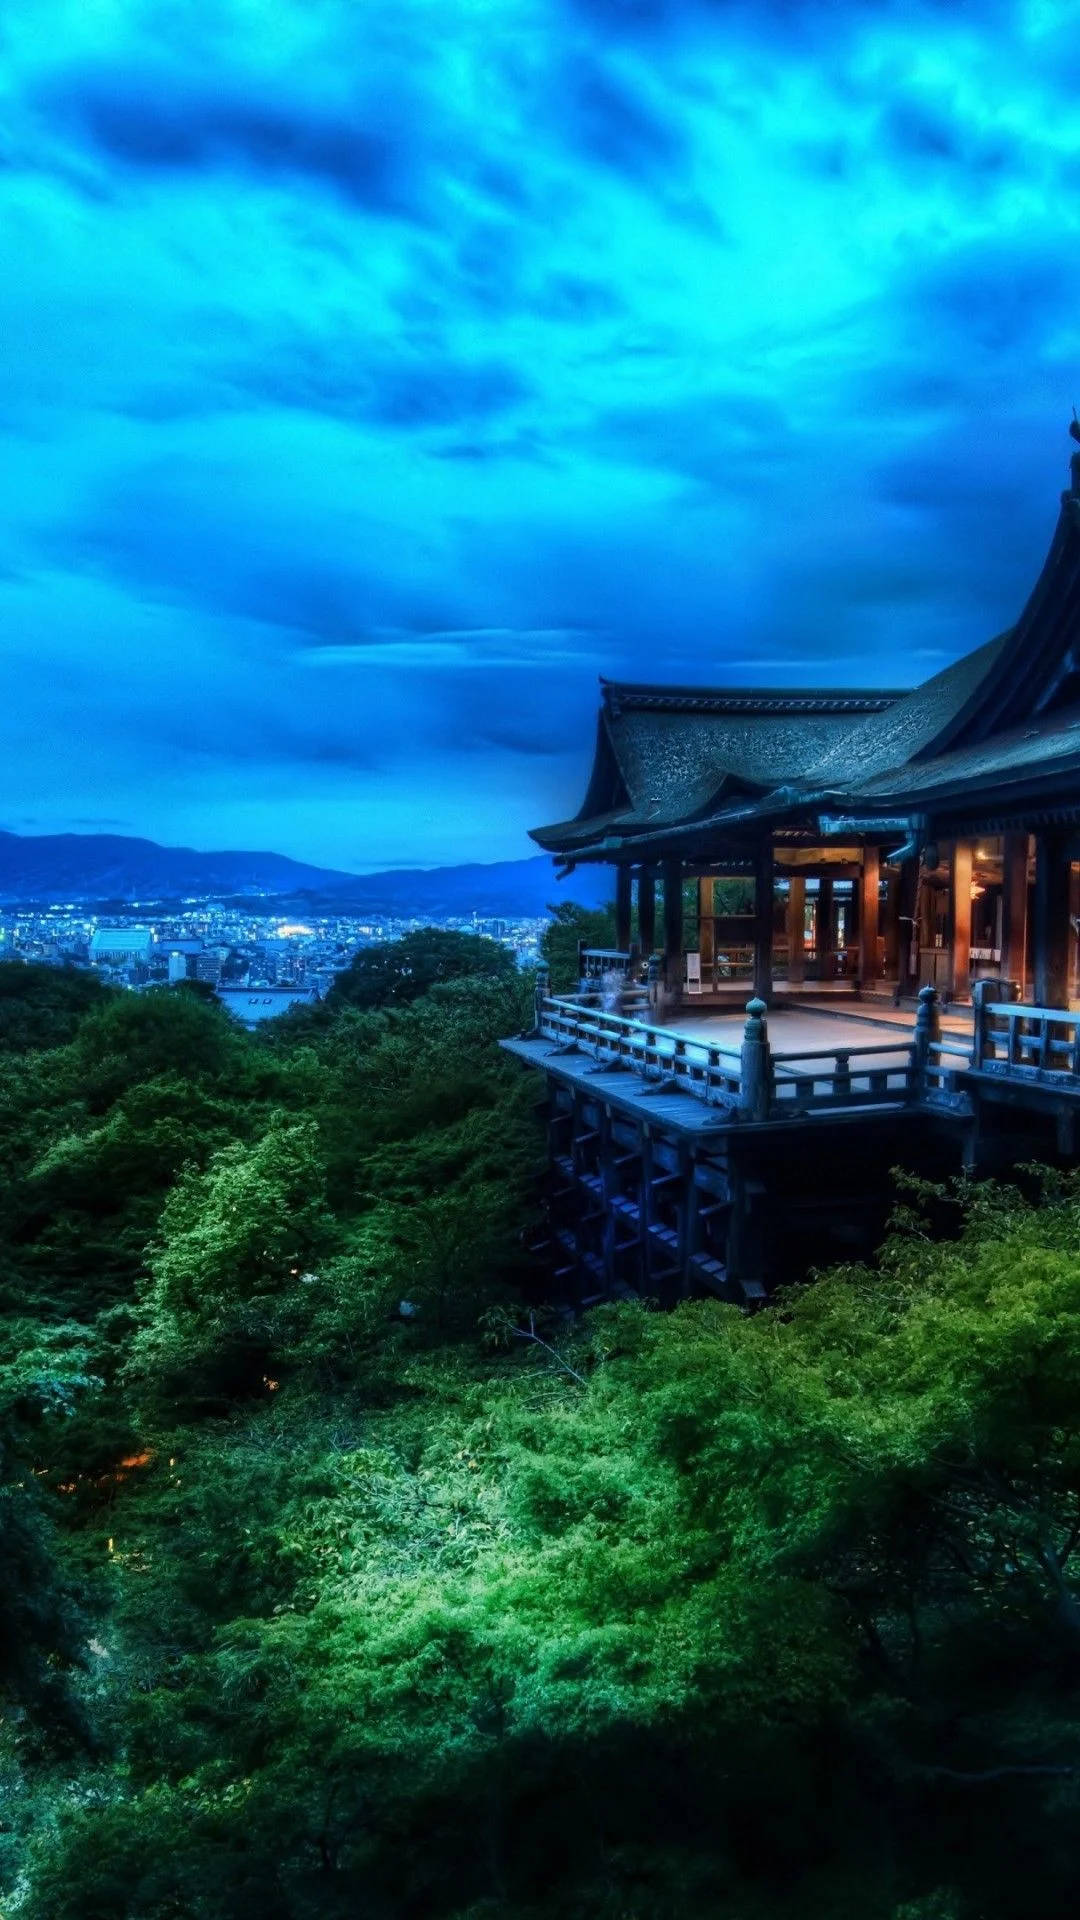 Jagantar Att Du Menar En Iphone-bakgrundsbild Med Temat Kiyomizu-dera. På Svenska Skulle Det Kunna Översättas Som 